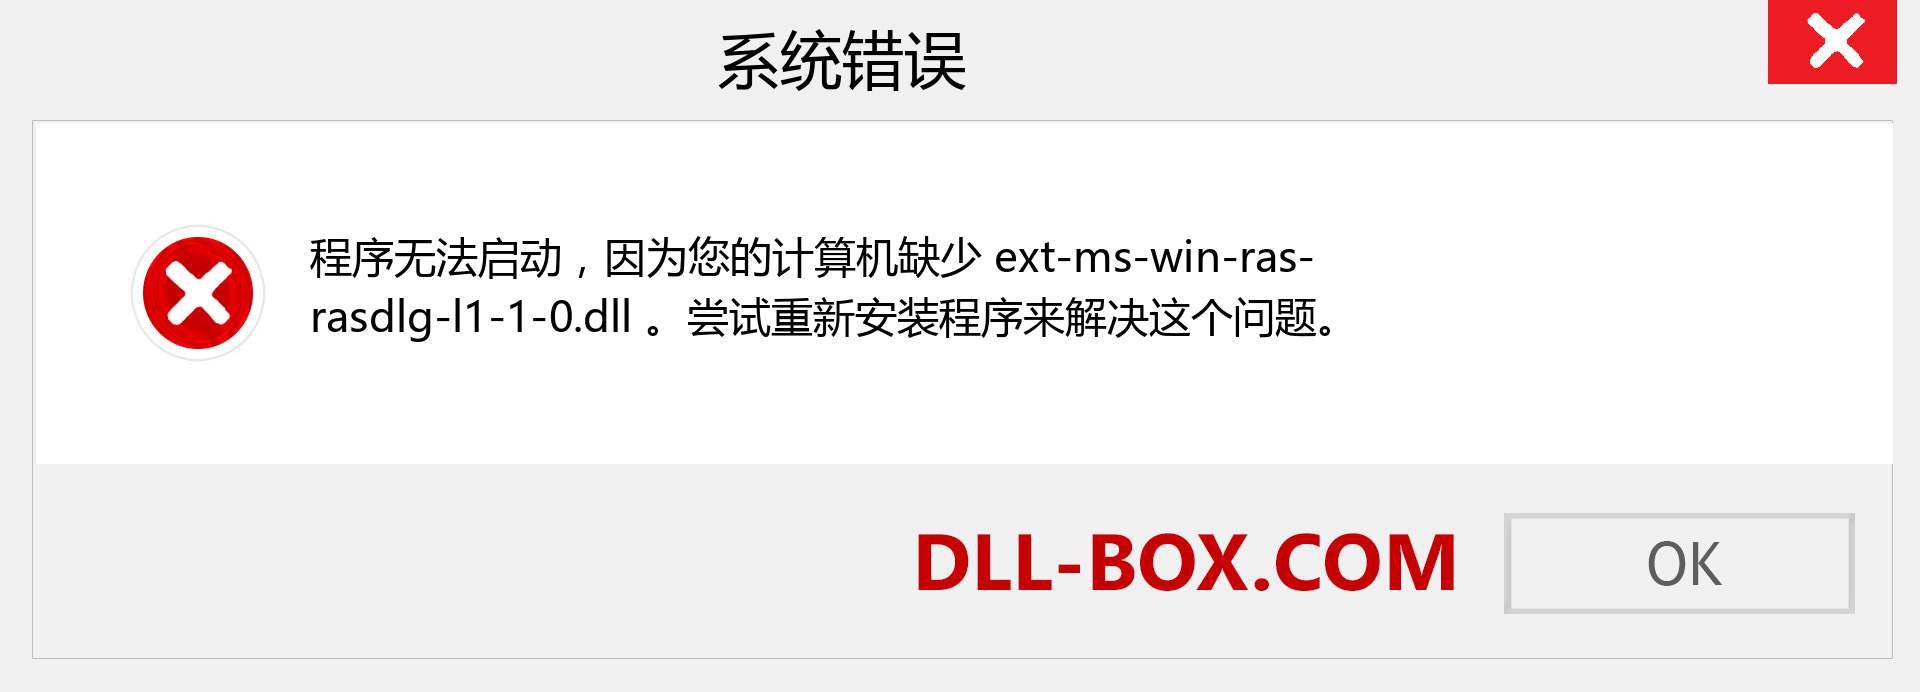 ext-ms-win-ras-rasdlg-l1-1-0.dll 文件丢失？。 适用于 Windows 7、8、10 的下载 - 修复 Windows、照片、图像上的 ext-ms-win-ras-rasdlg-l1-1-0 dll 丢失错误